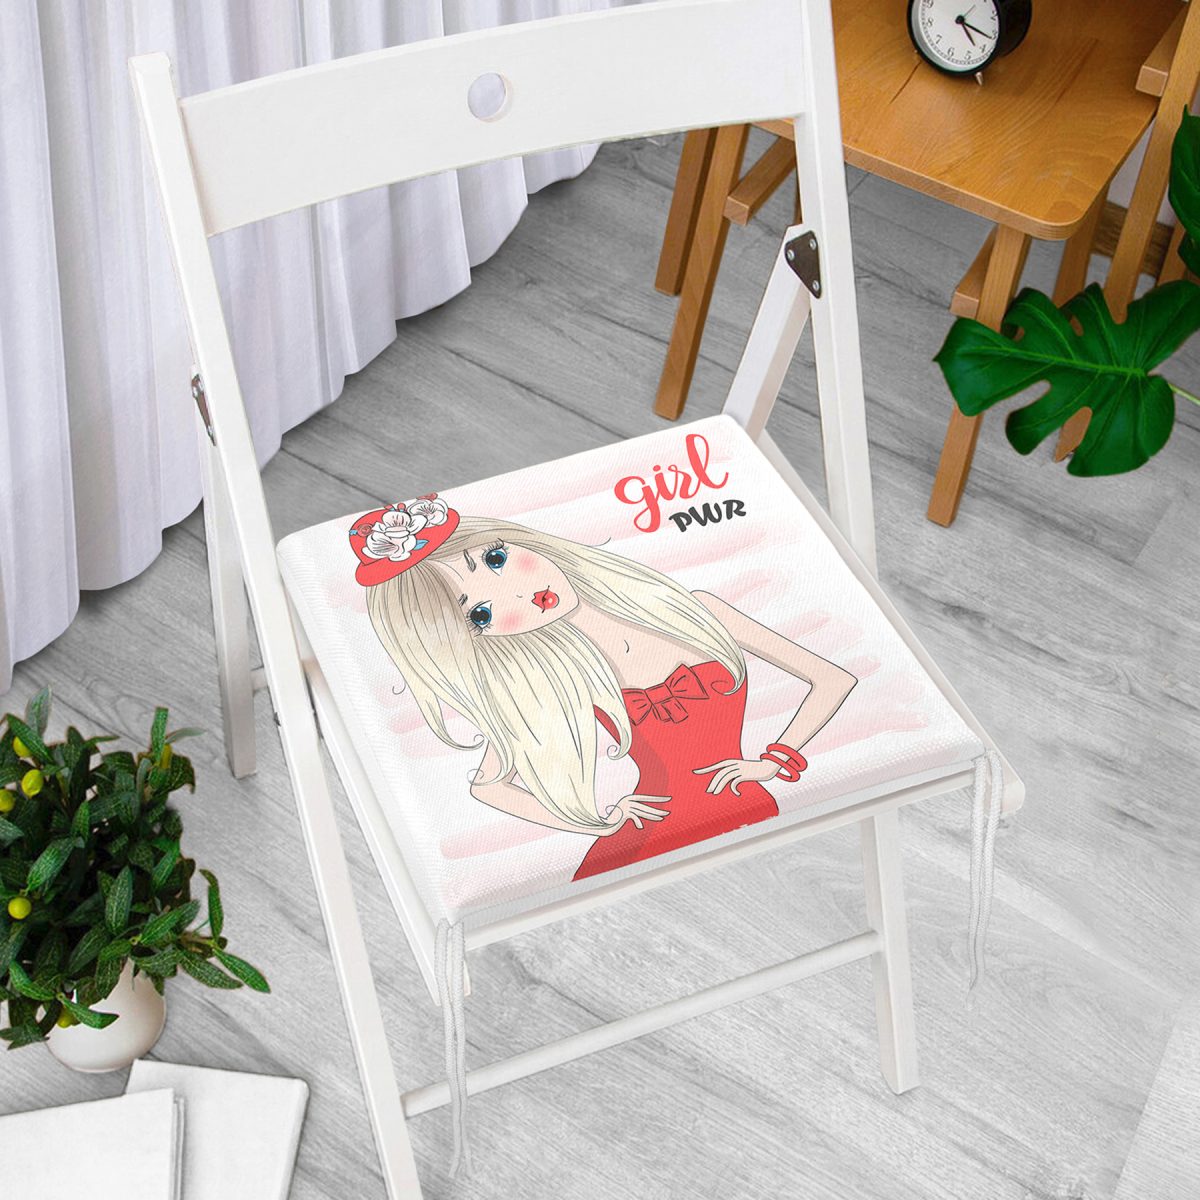 Çizgili Grl Power Desenli Dijital Baskılı Dekoratif Fermuarlı Sandalye Minderi Realhomes